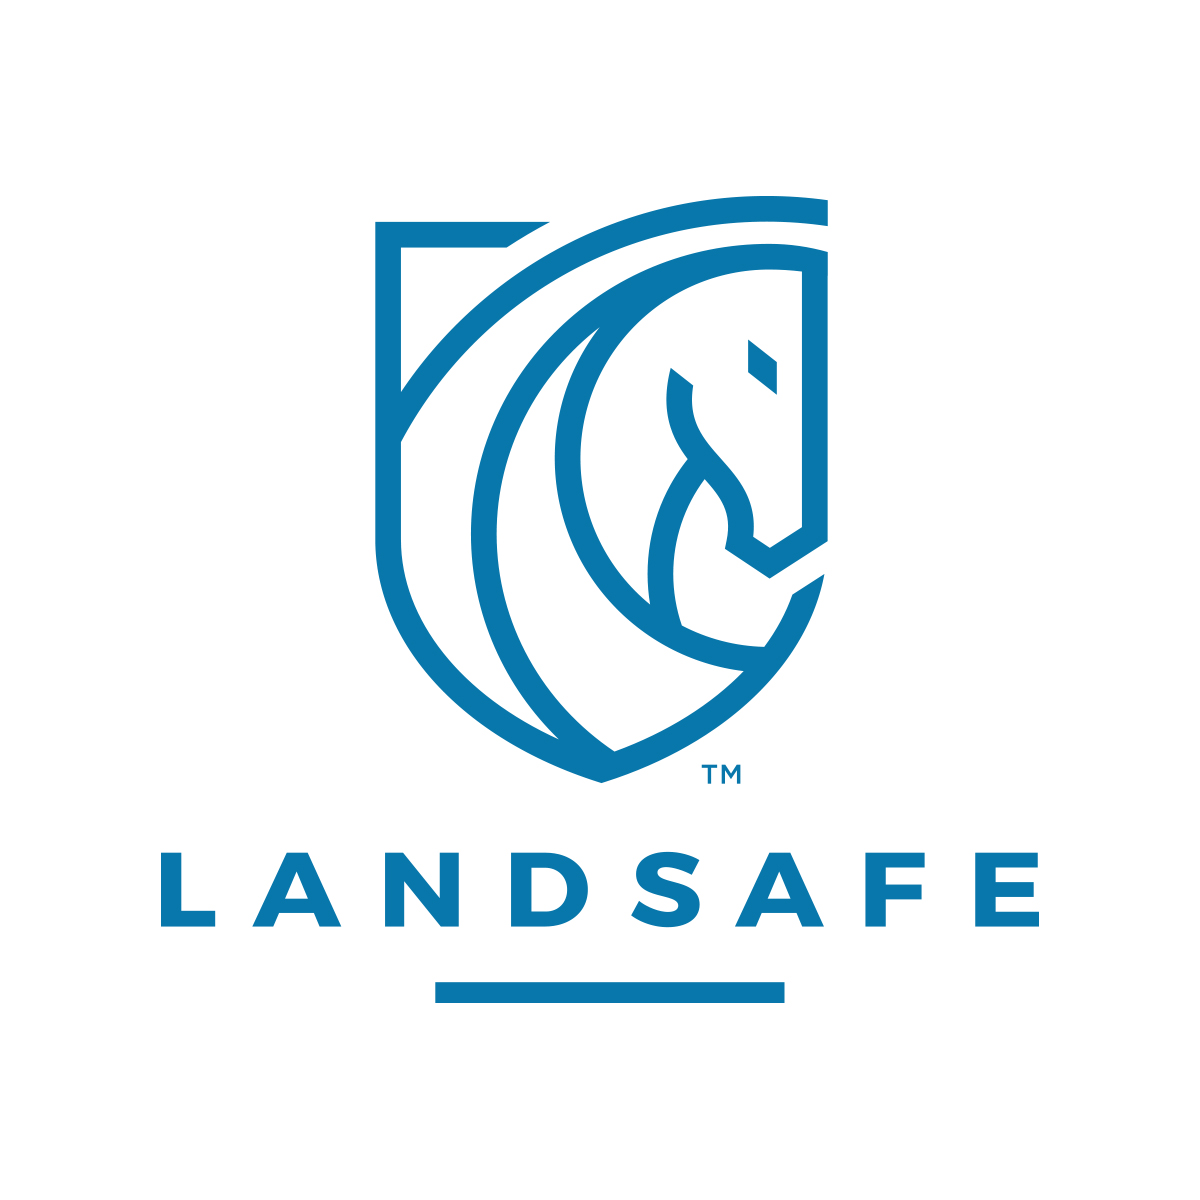 "Landsafe_logo_ID_BLUE_VERT.jpg"